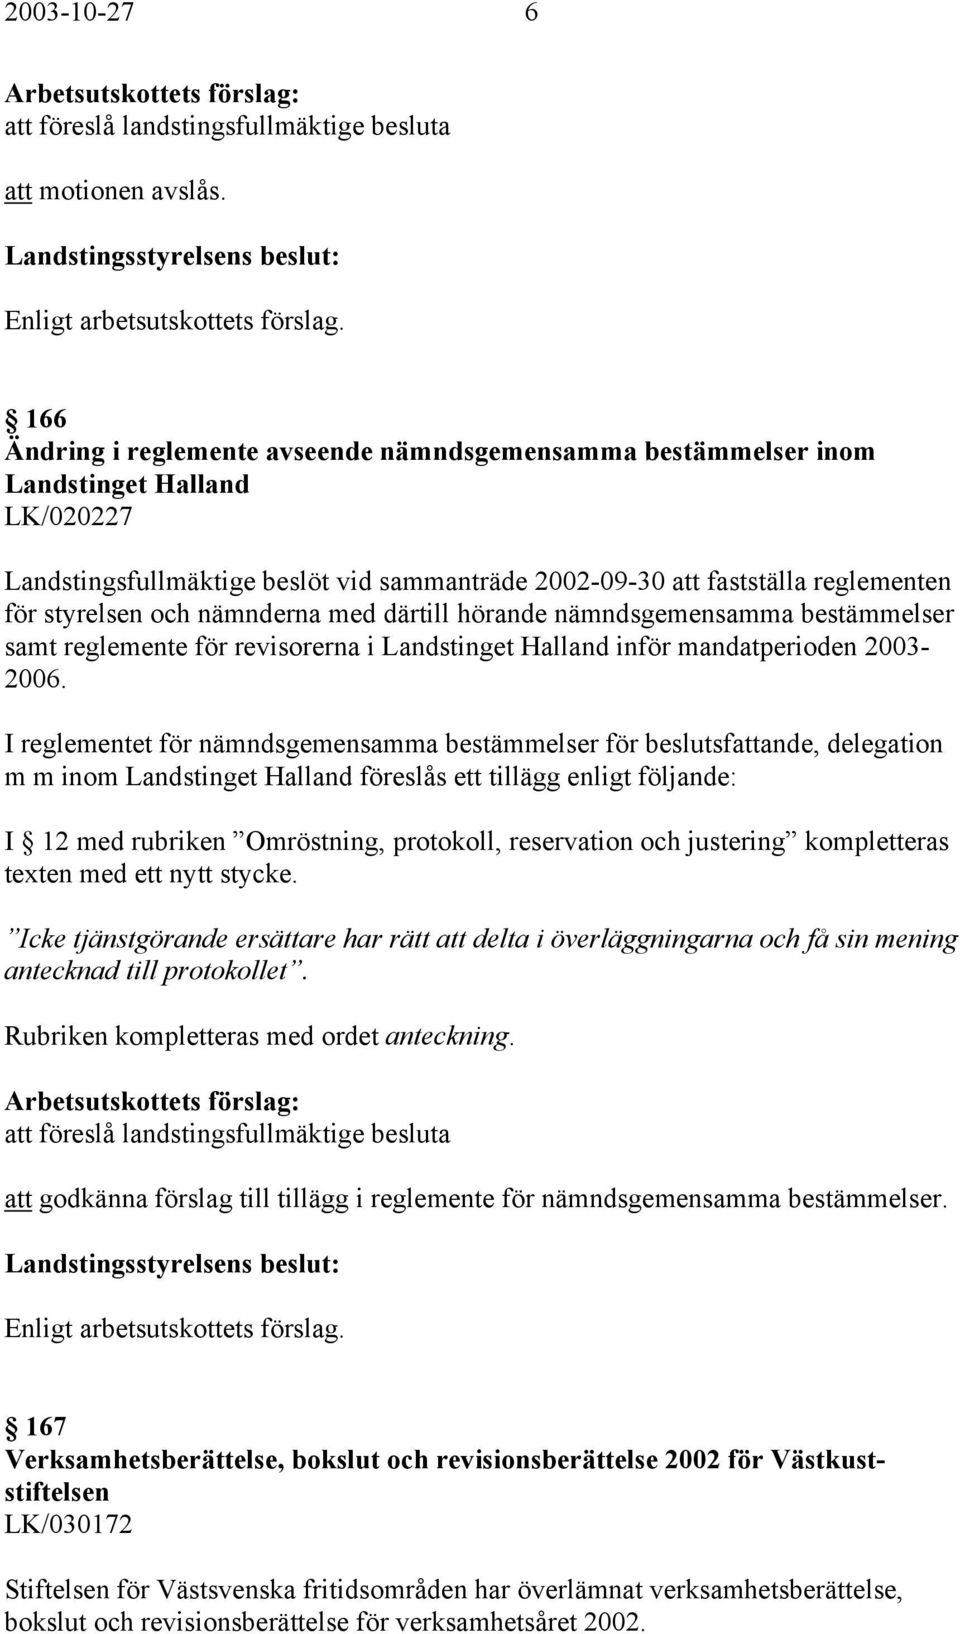 nämnderna med därtill hörande nämndsgemensamma bestämmelser samt reglemente för revisorerna i Landstinget Halland inför mandatperioden 2003-2006.